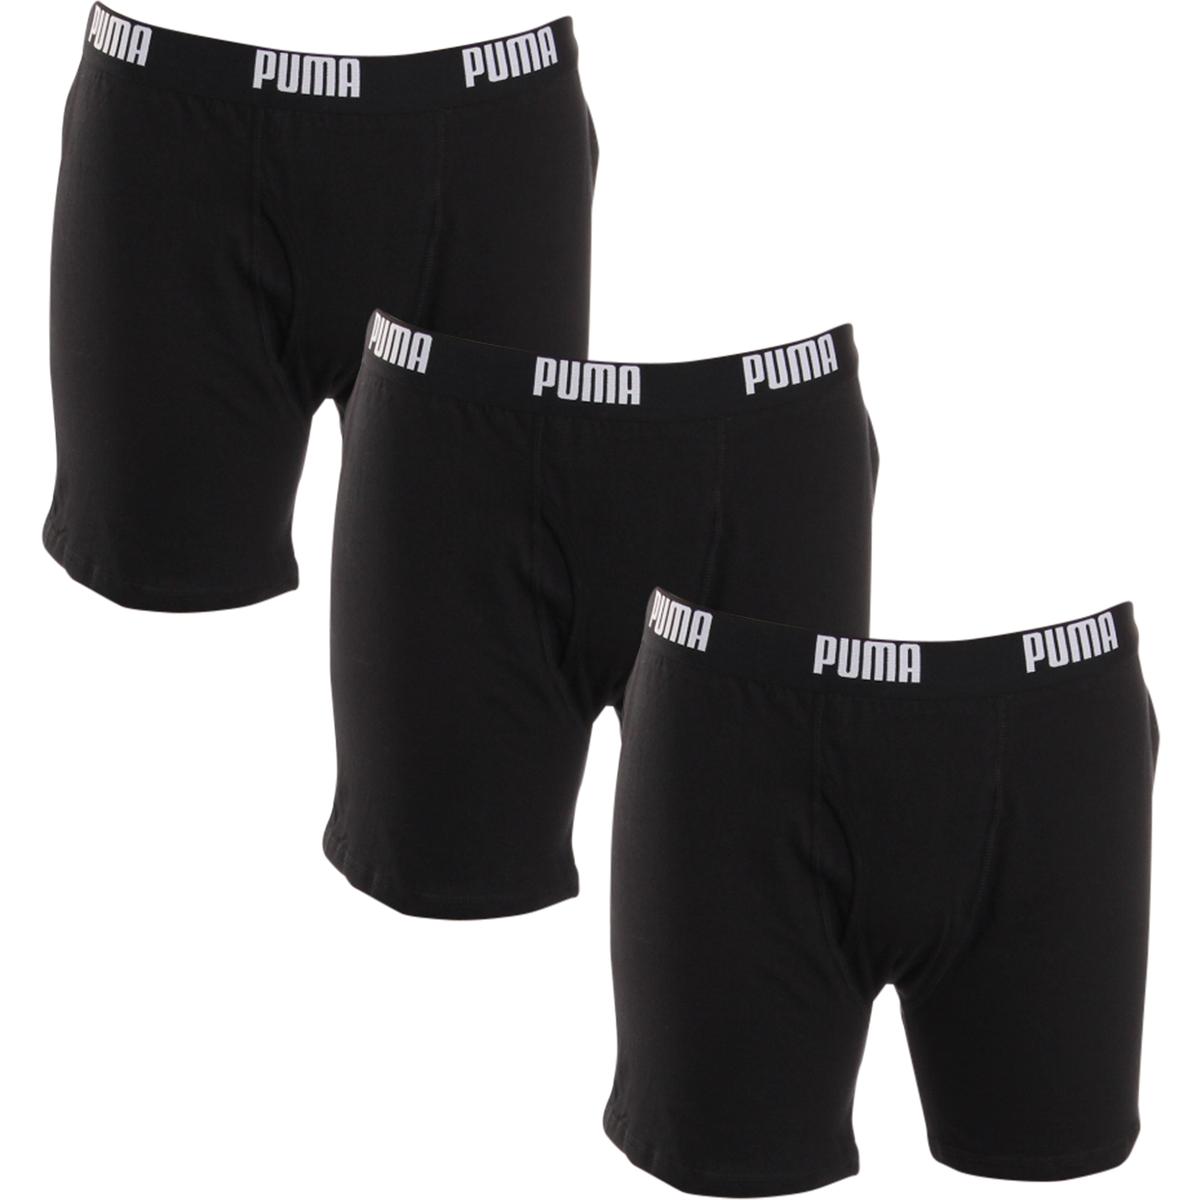 Puma Mens Black 3 Pack Tagless Underwear Boxer Briefs S BHFO 6819 | eBay